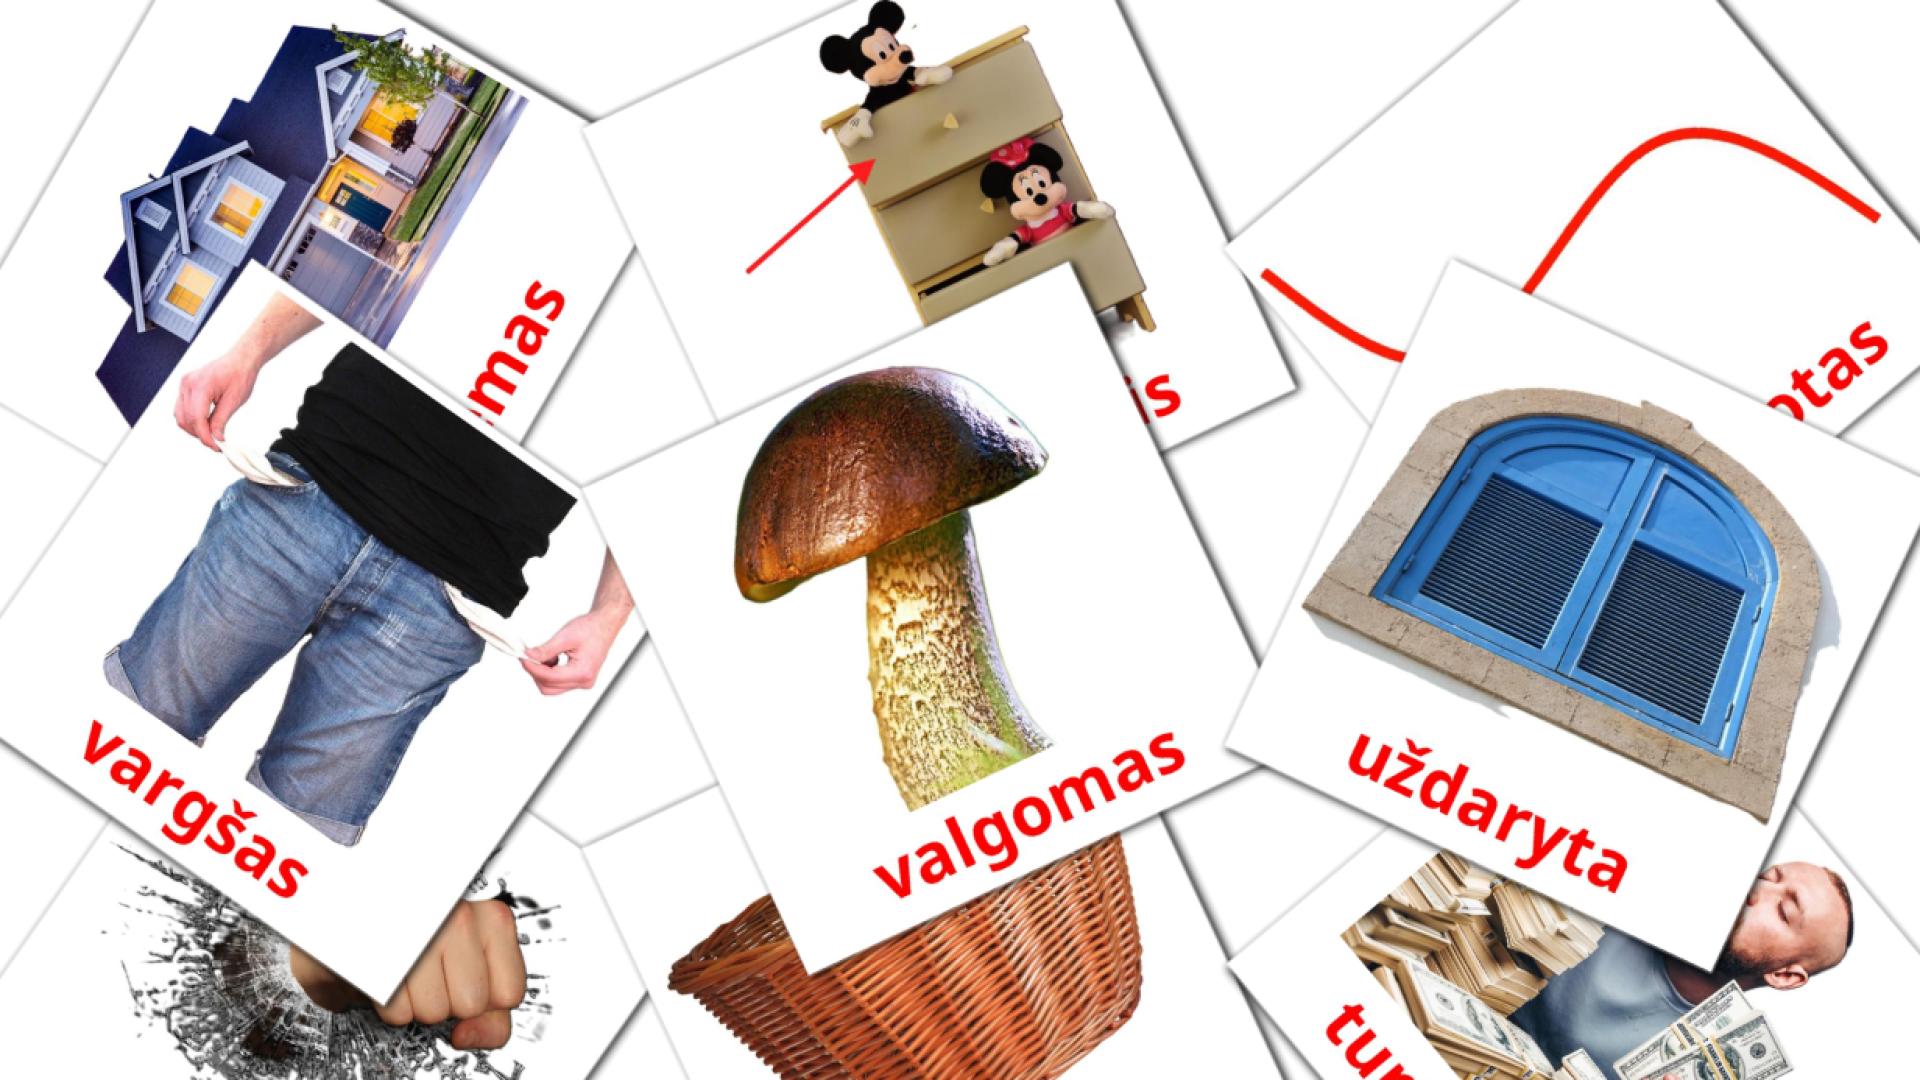 Litauisch būdvardžiaie Vokabelkarteikarten